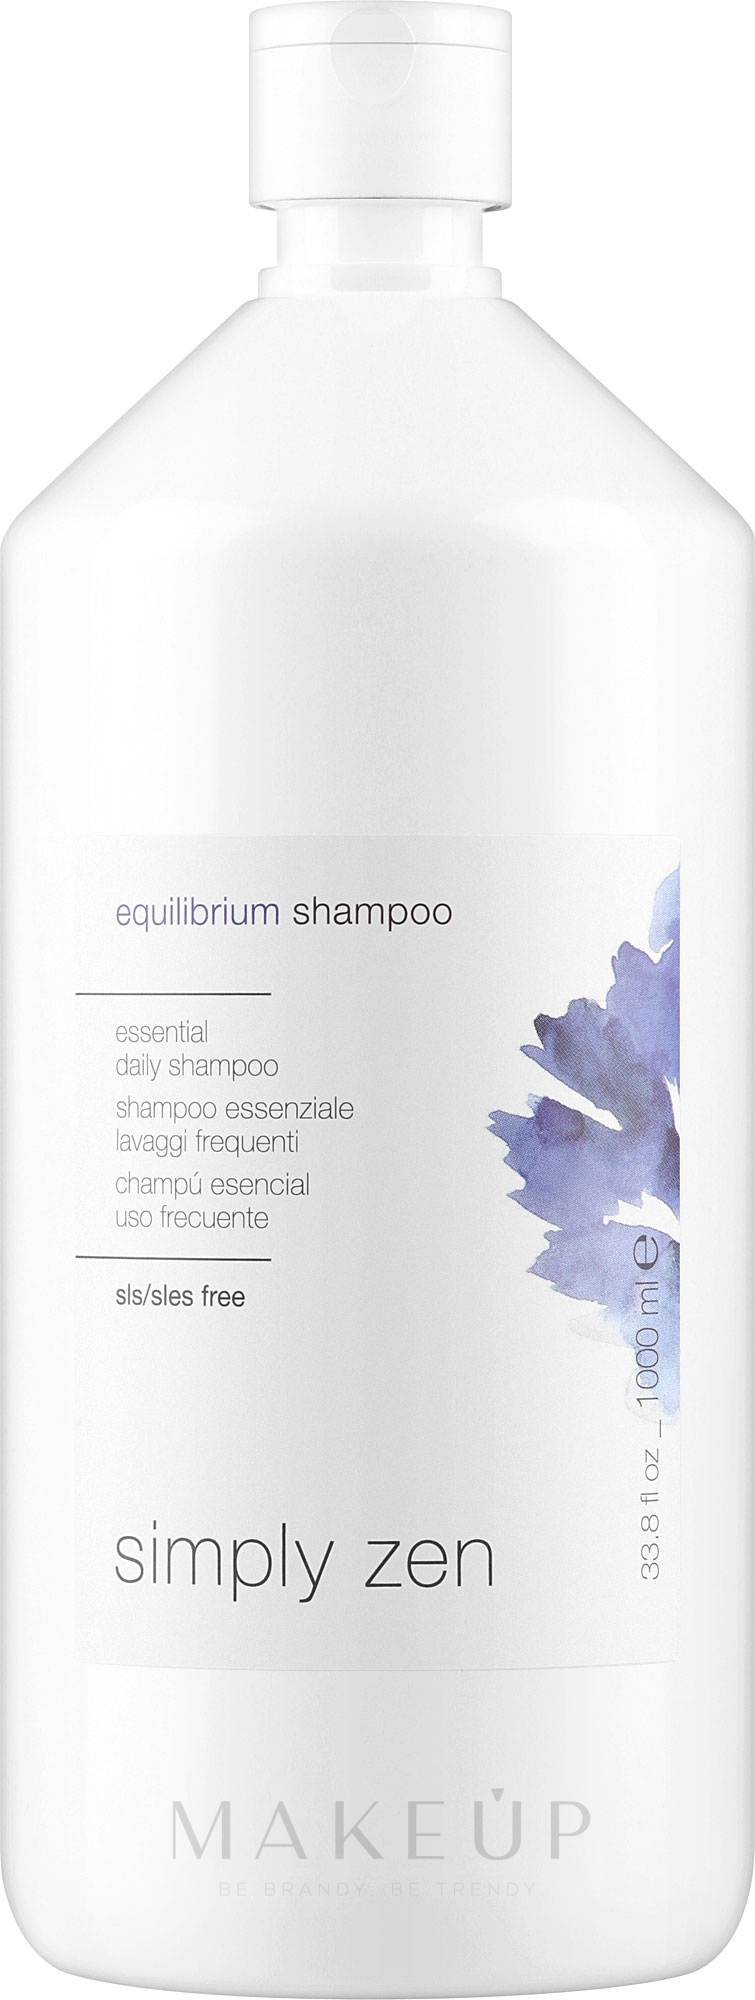 Gleichgewicht-Shampoo - Z. One Concept Simply Zen Equilibrium Shampoo — Bild 1000 ml